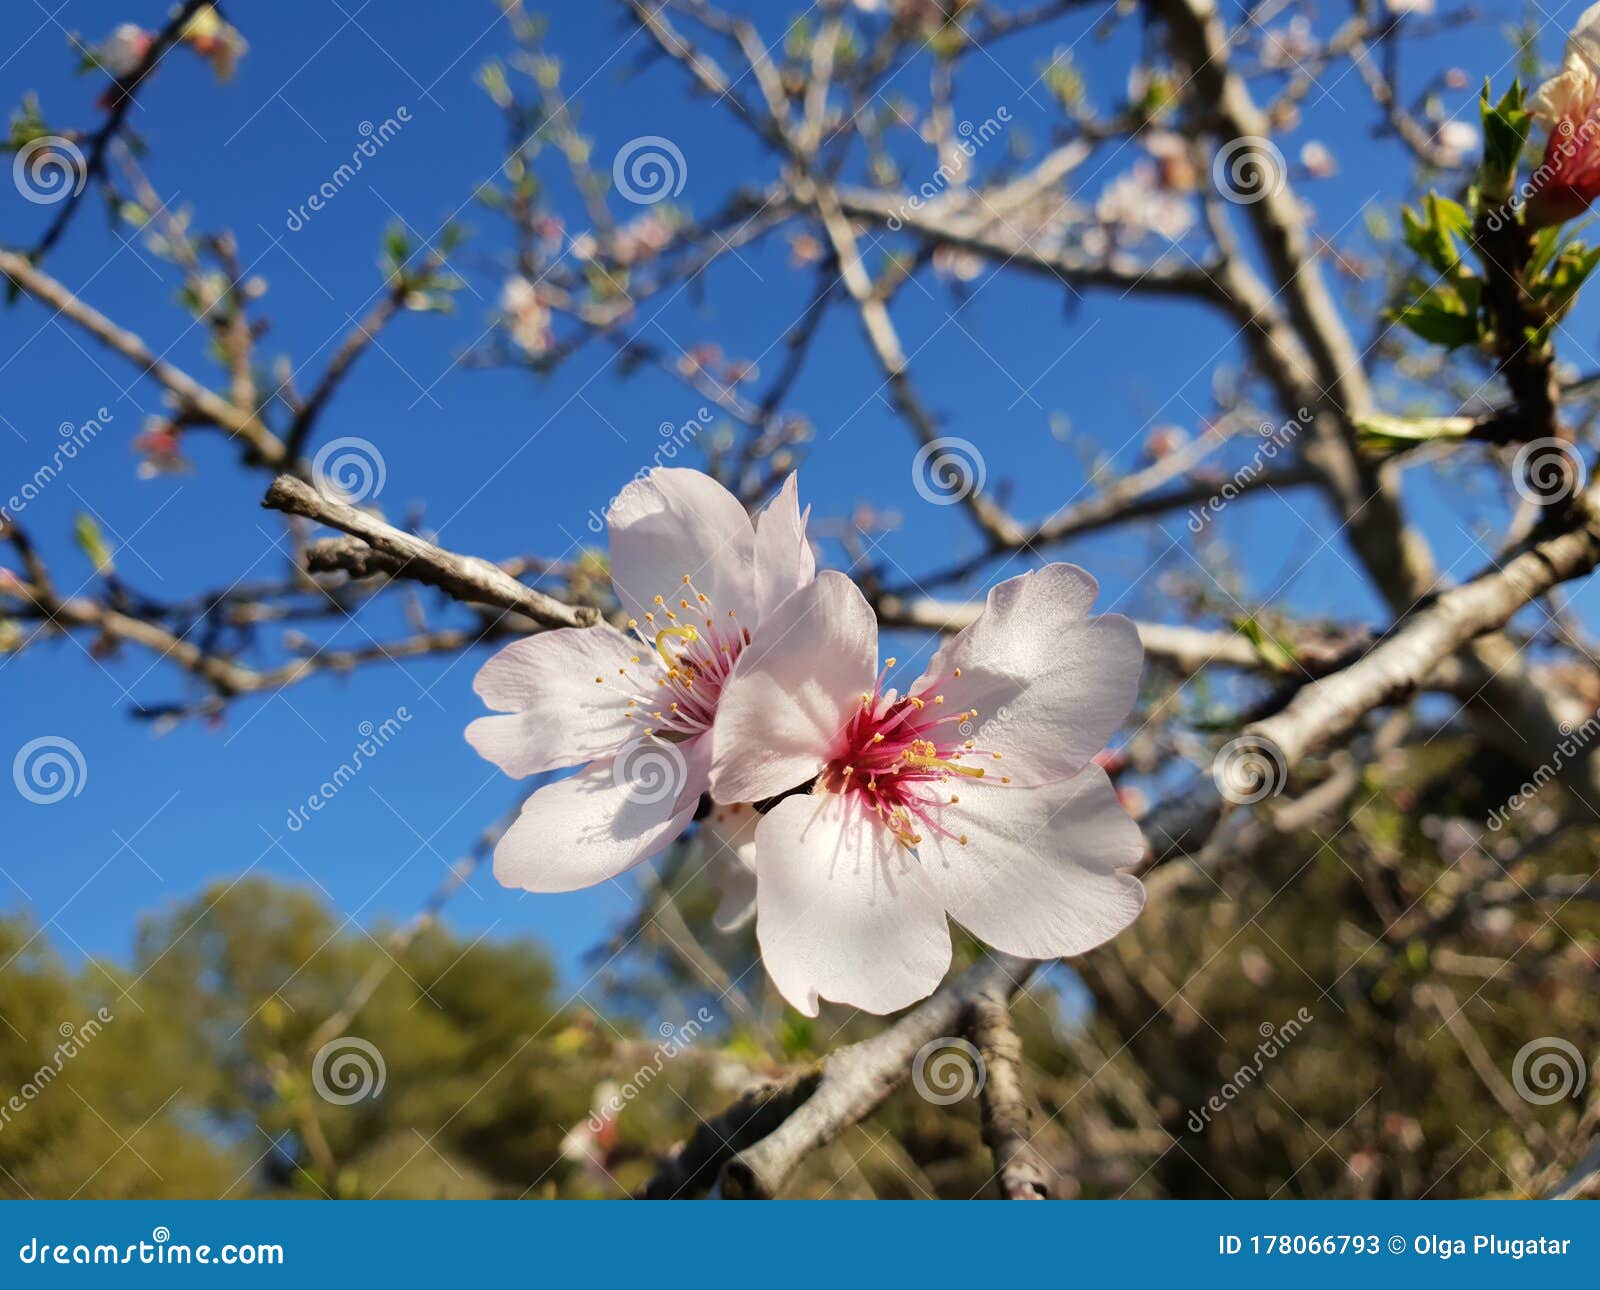 Розовый цветок цветы миндаль против зацветать голубого неба весенний цветовминдального дерева в Испании Стоковое Изображение - изображениенасчитывающей комплект, завод: 178066793